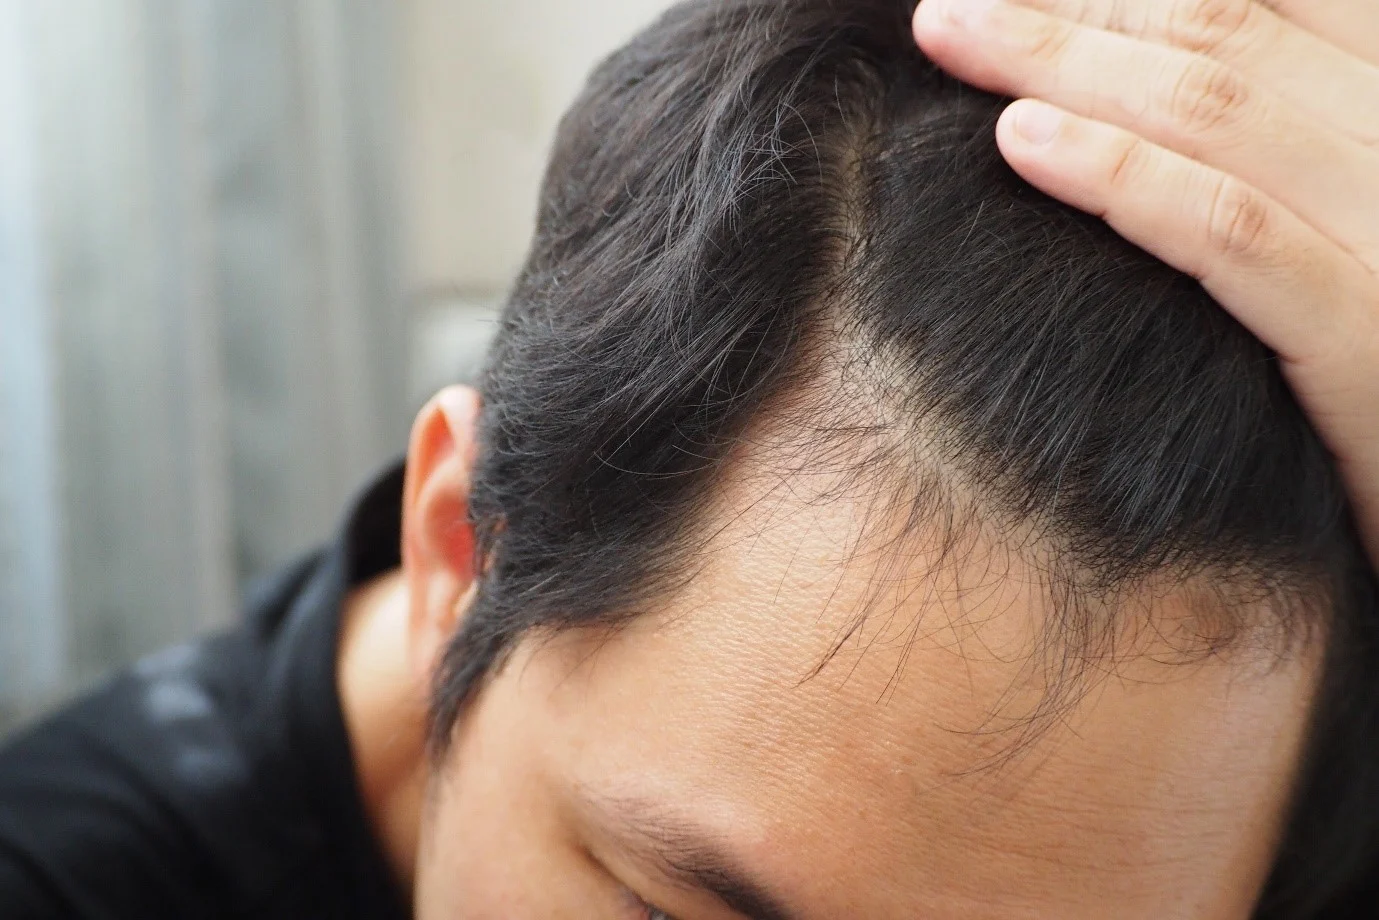 Hair fall treatment for men